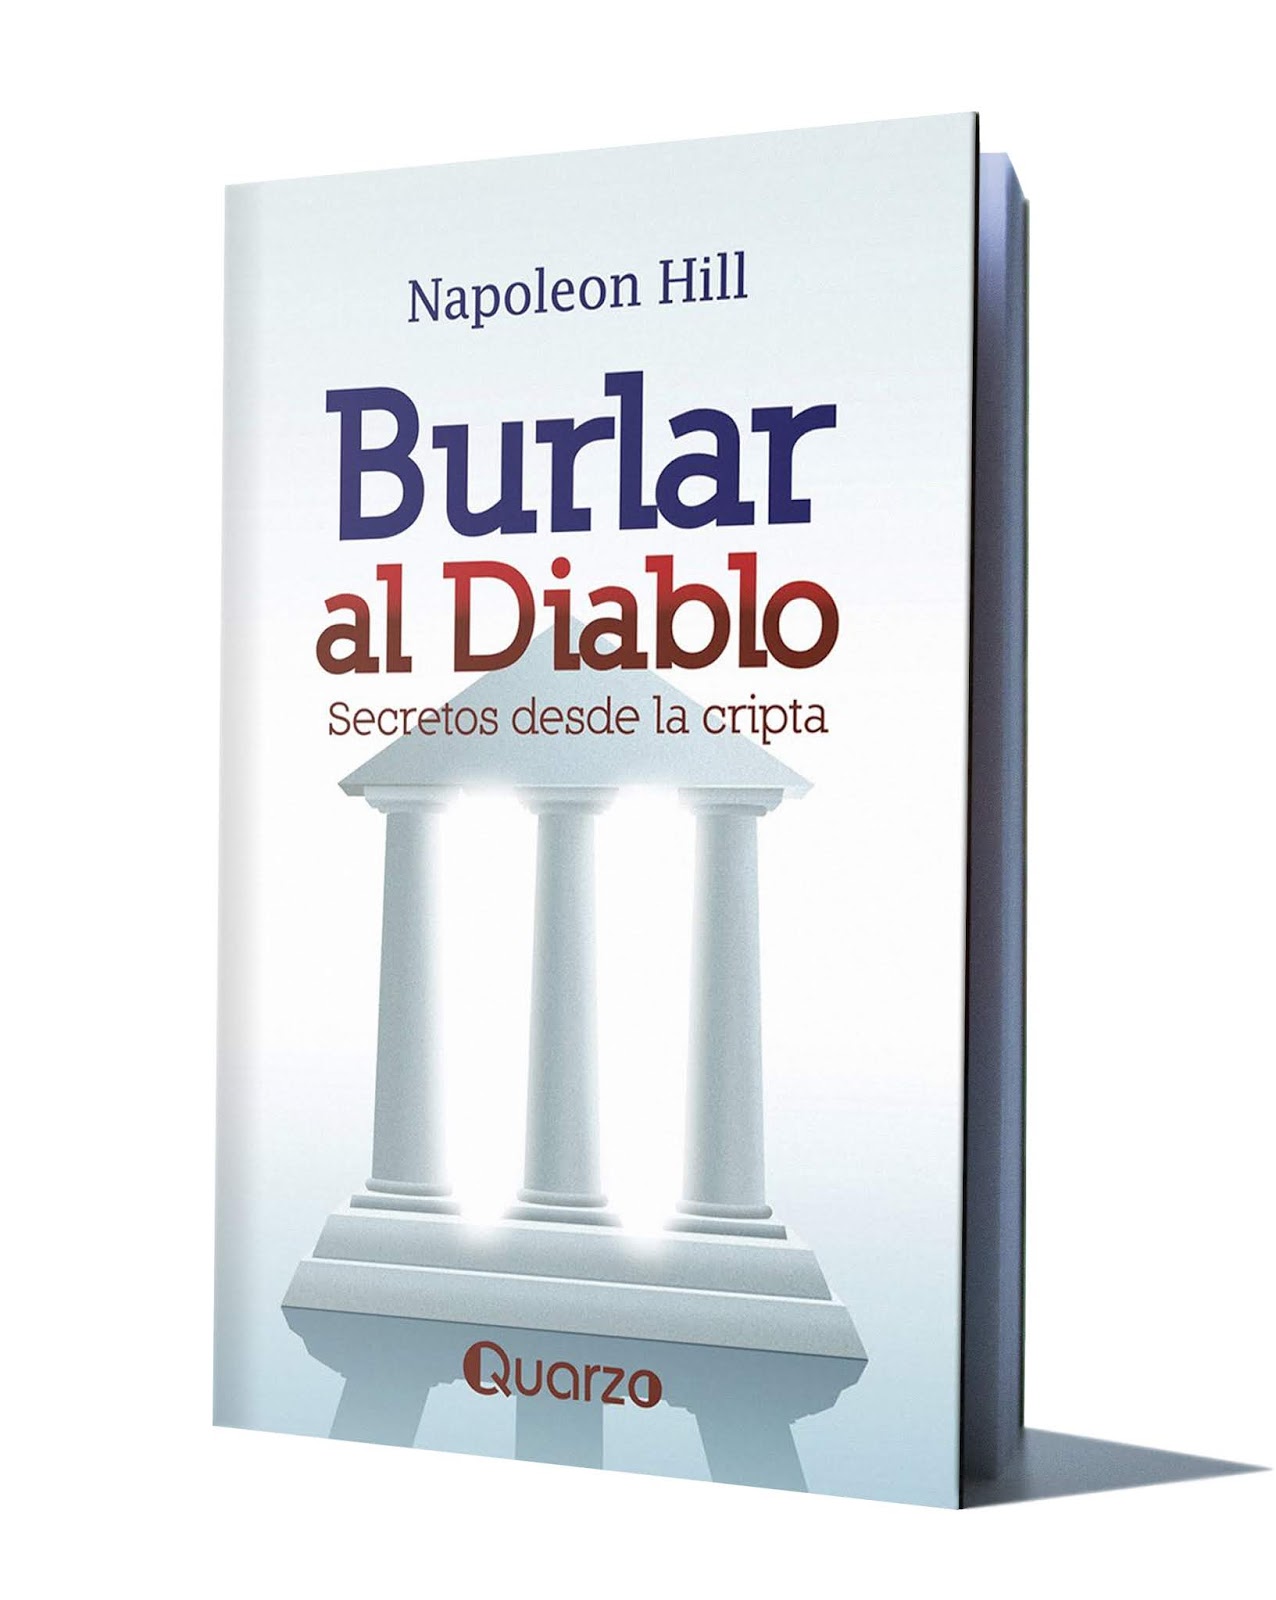 Napoleon Hill - MÁS ASTUTO QUE EL DIABLO (Audiolibro Resumen